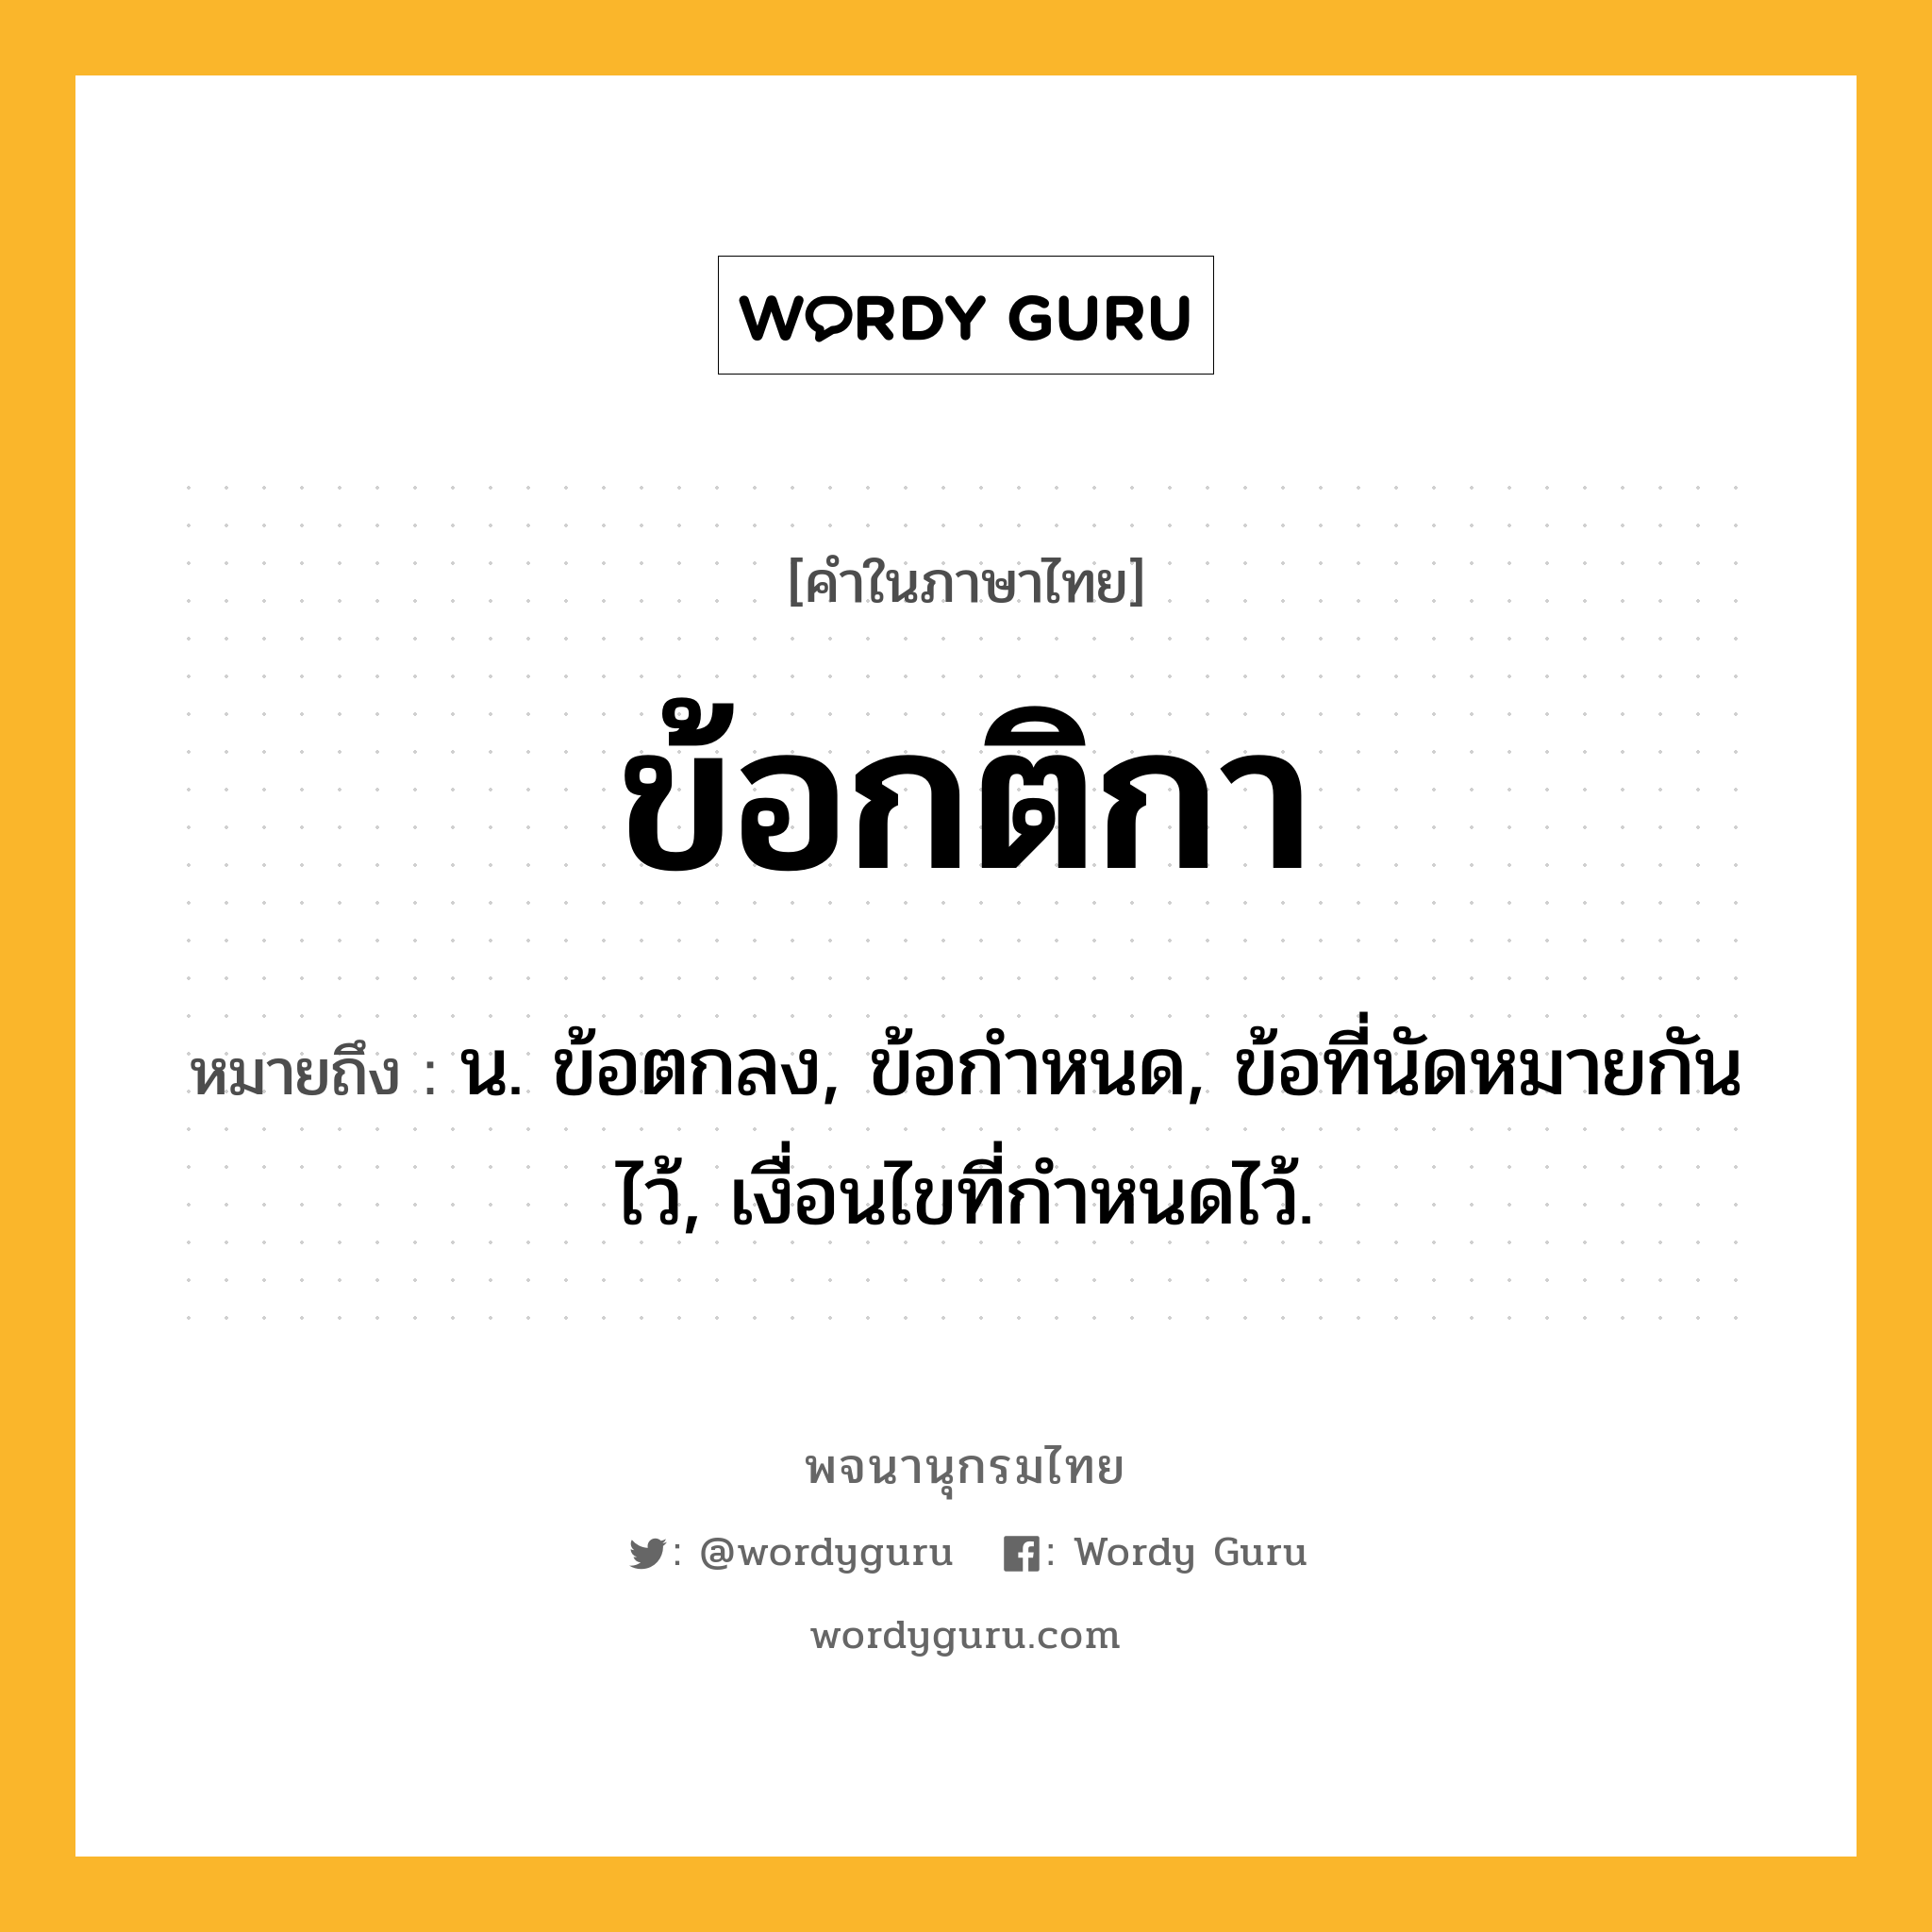 ข้อกติกา ความหมาย หมายถึงอะไร?, คำในภาษาไทย ข้อกติกา หมายถึง น. ข้อตกลง, ข้อกําหนด, ข้อที่นัดหมายกันไว้, เงื่อนไขที่กําหนดไว้.